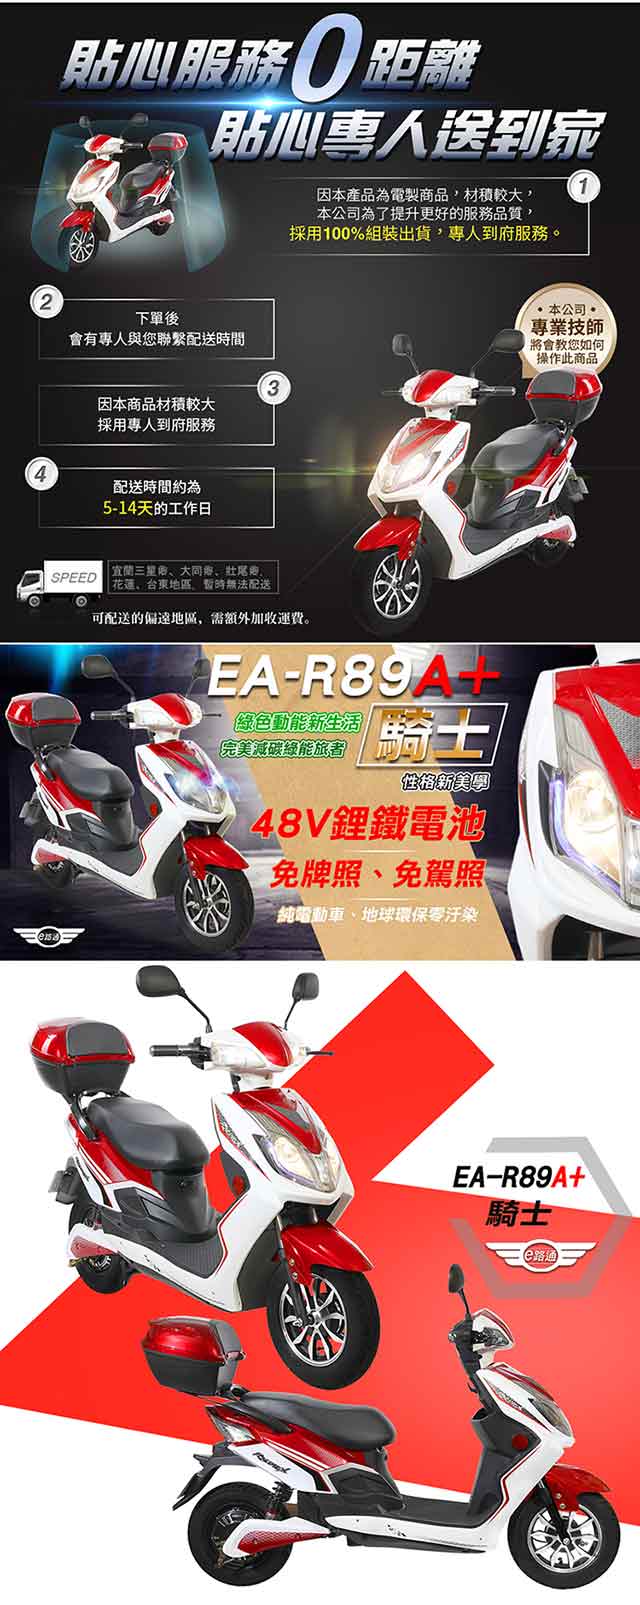 EA-R89A+ 騎士 48V鋰鐵電池 500W LED大燈 液晶儀表 電動車